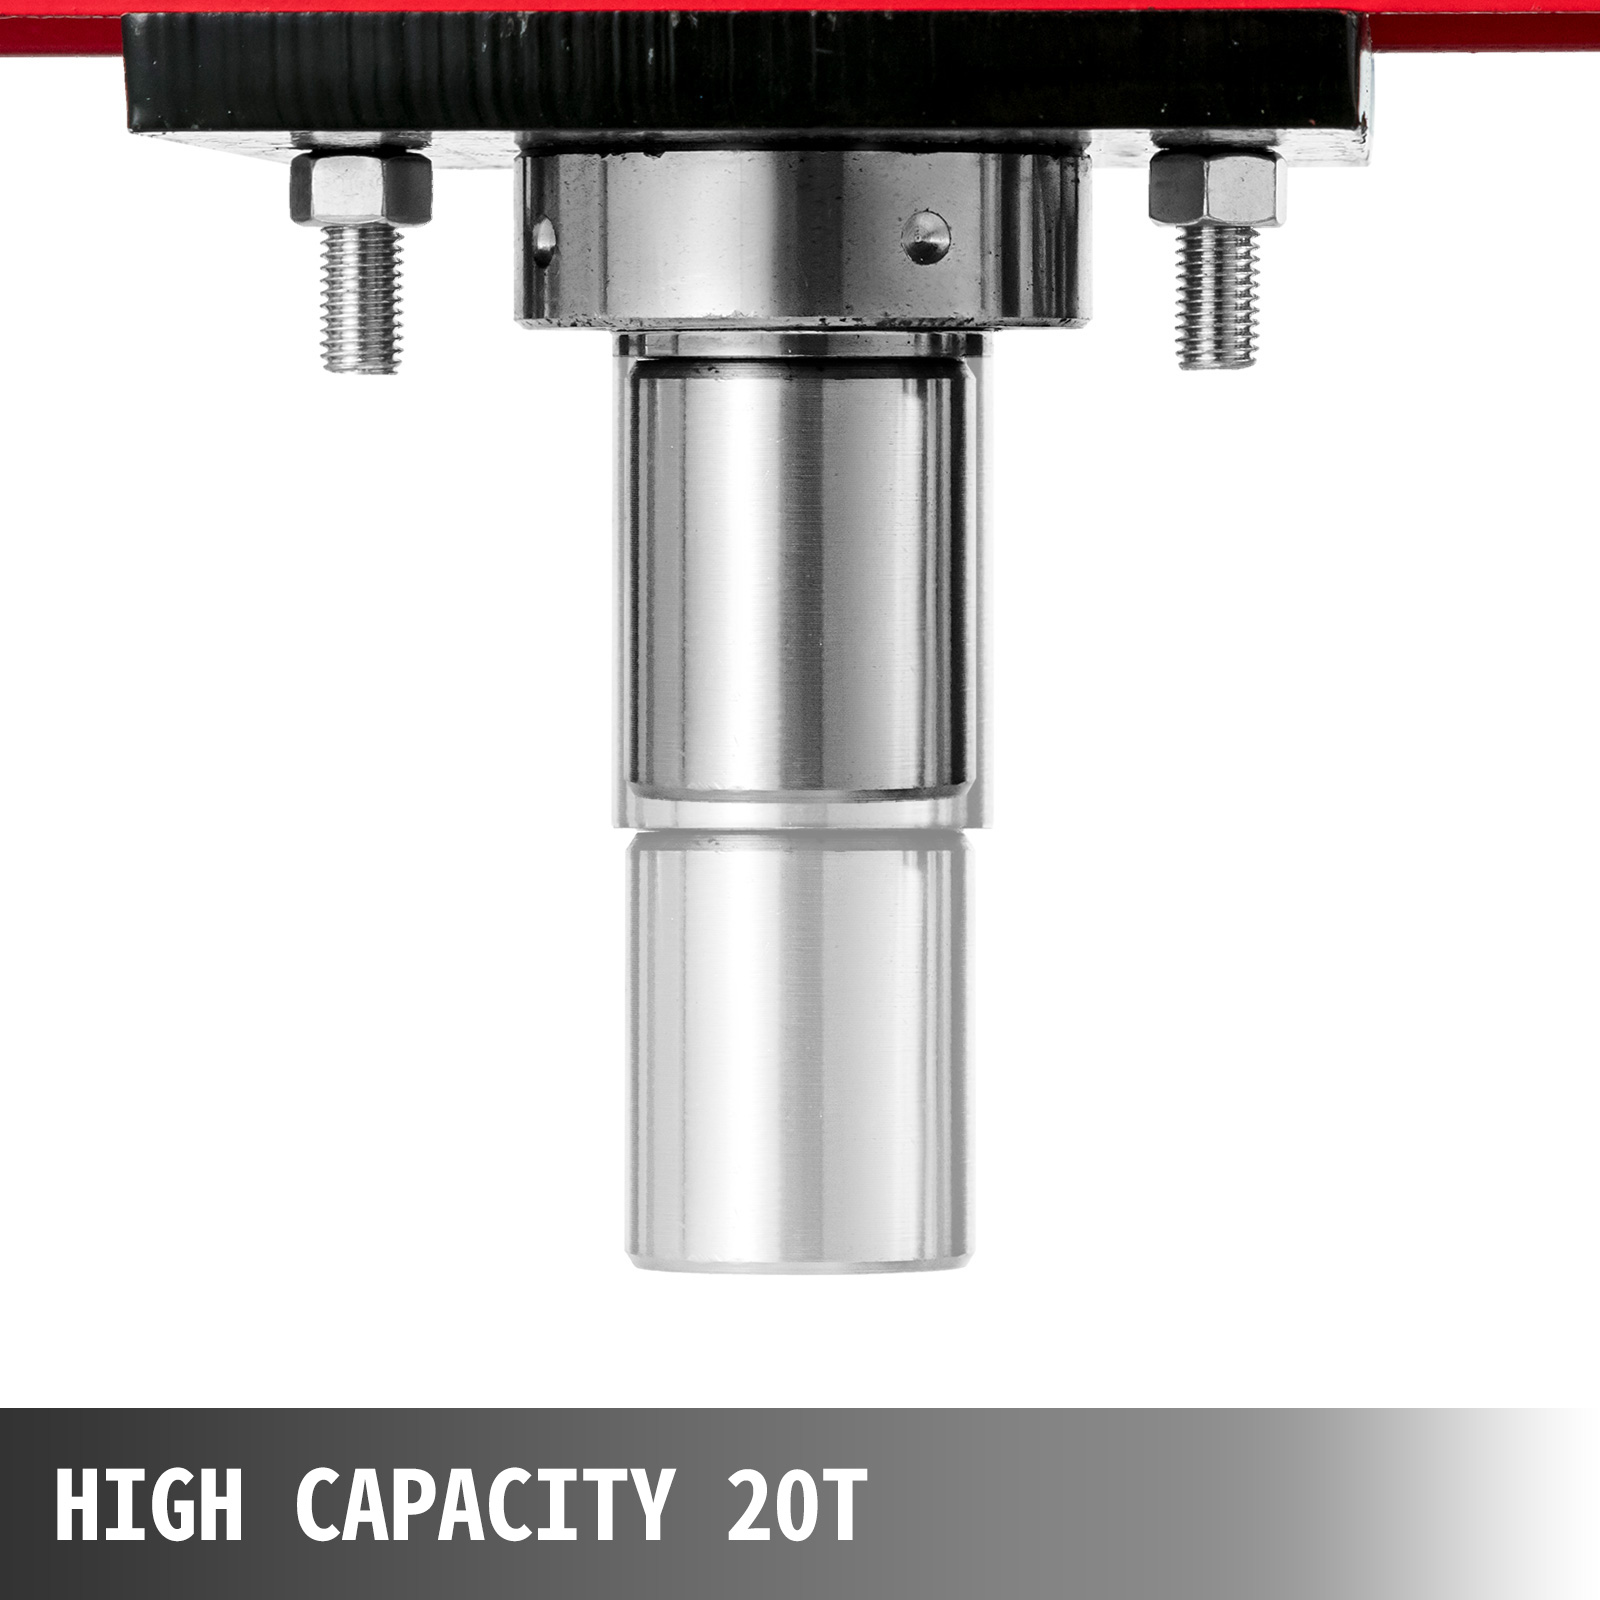 20T Hydraulic Press Heavy Duty Workshop Garage Shop Floor Press Equipment Tool 